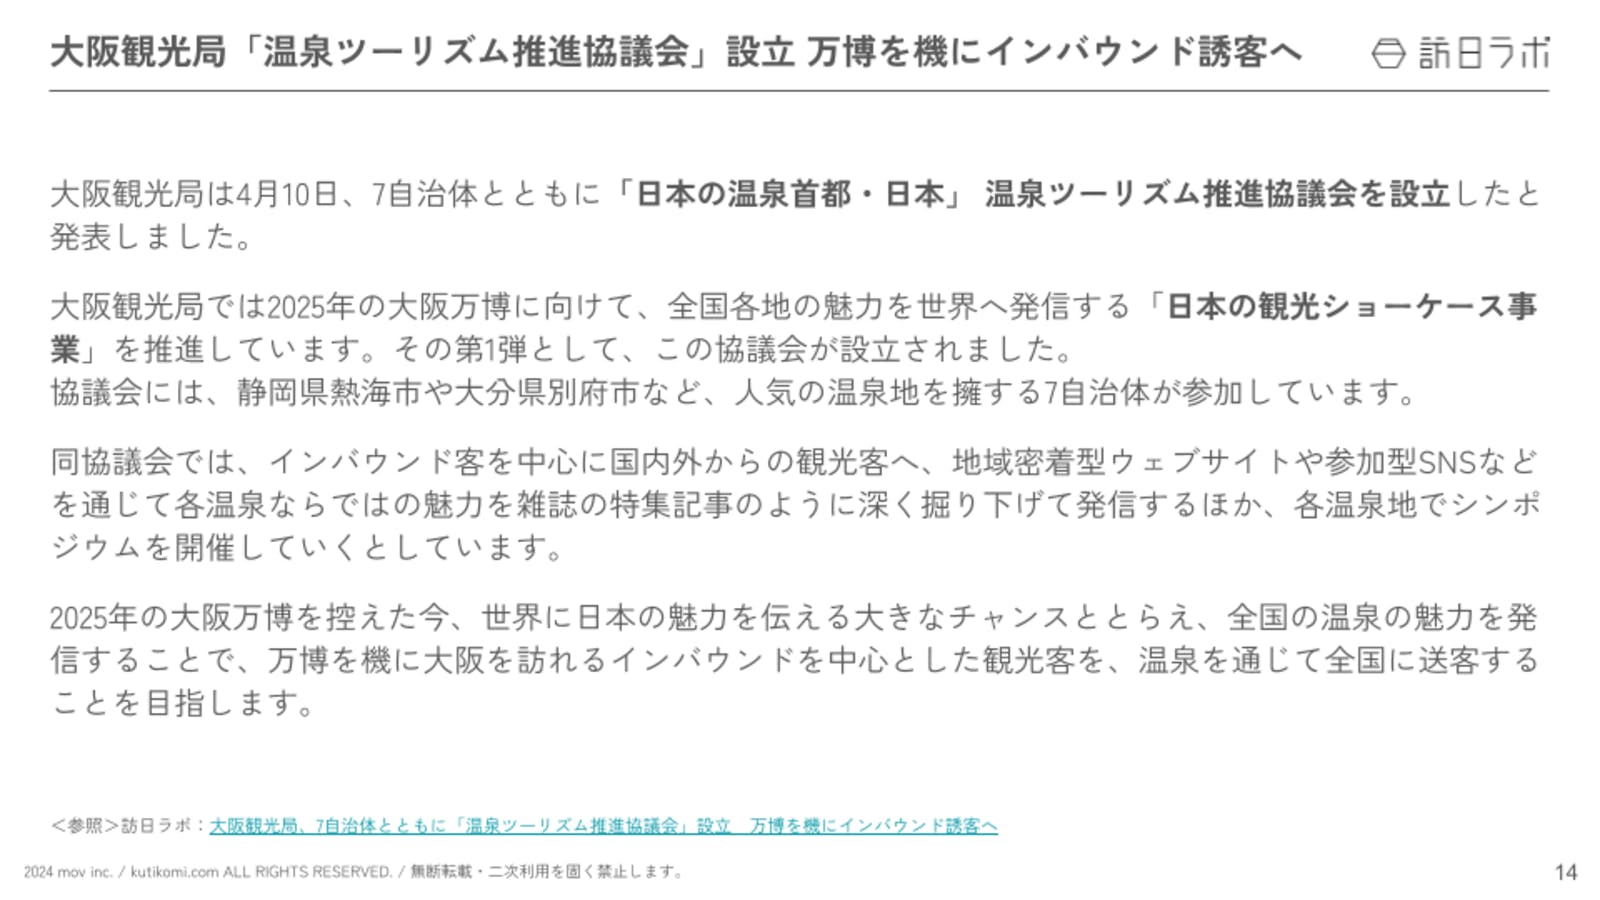 大阪観光局、7自治体とともに「温泉ツーリズム推進協議会」設立　万博を機にインバウンド誘客へ【インバウンド情報まとめ5月前編】